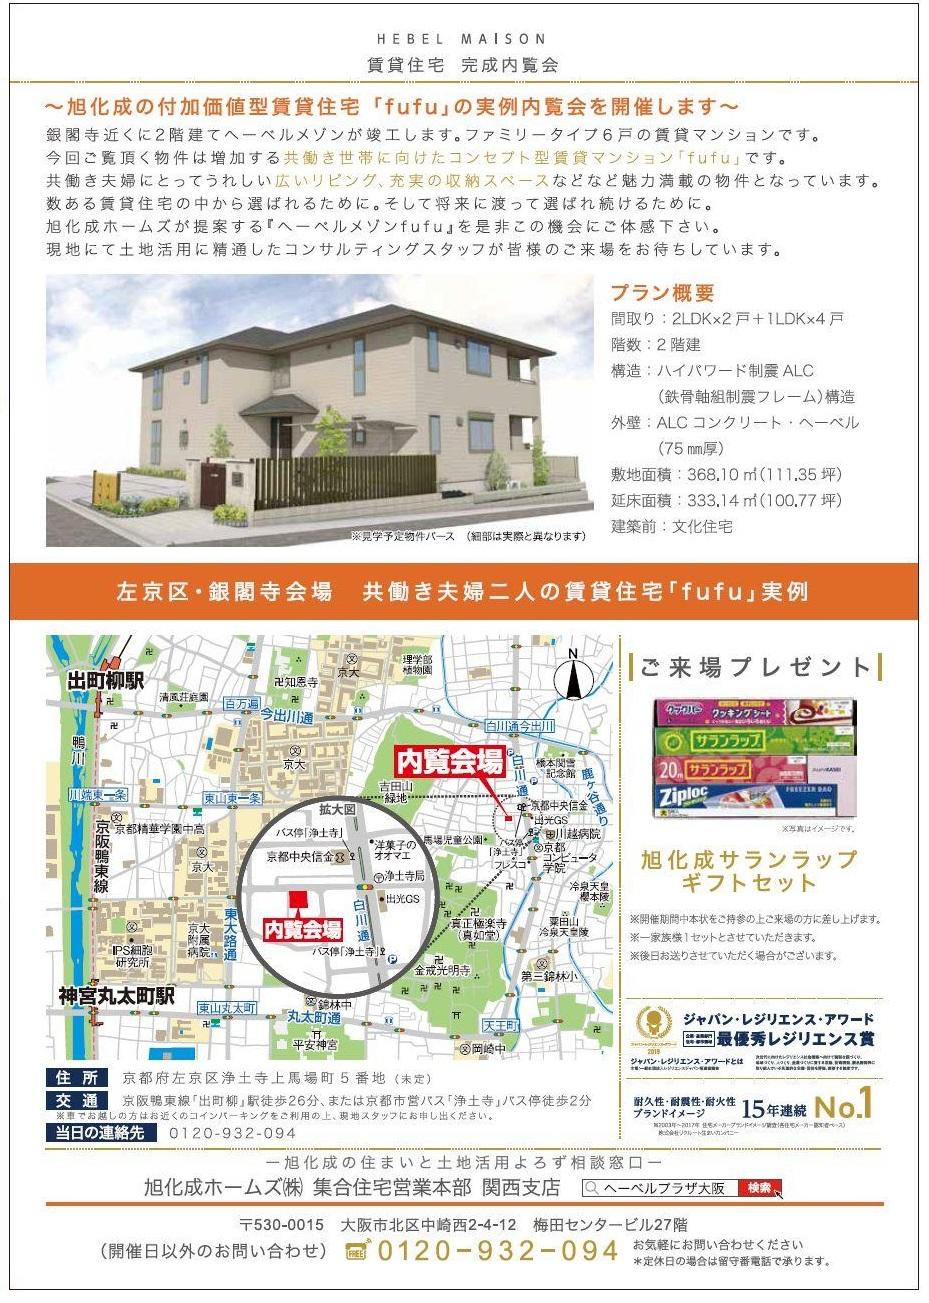 https://www.asahi-kasei.co.jp/maison/hebelplaza/blog/18/osaka/item/2019/20190924-2.jpg